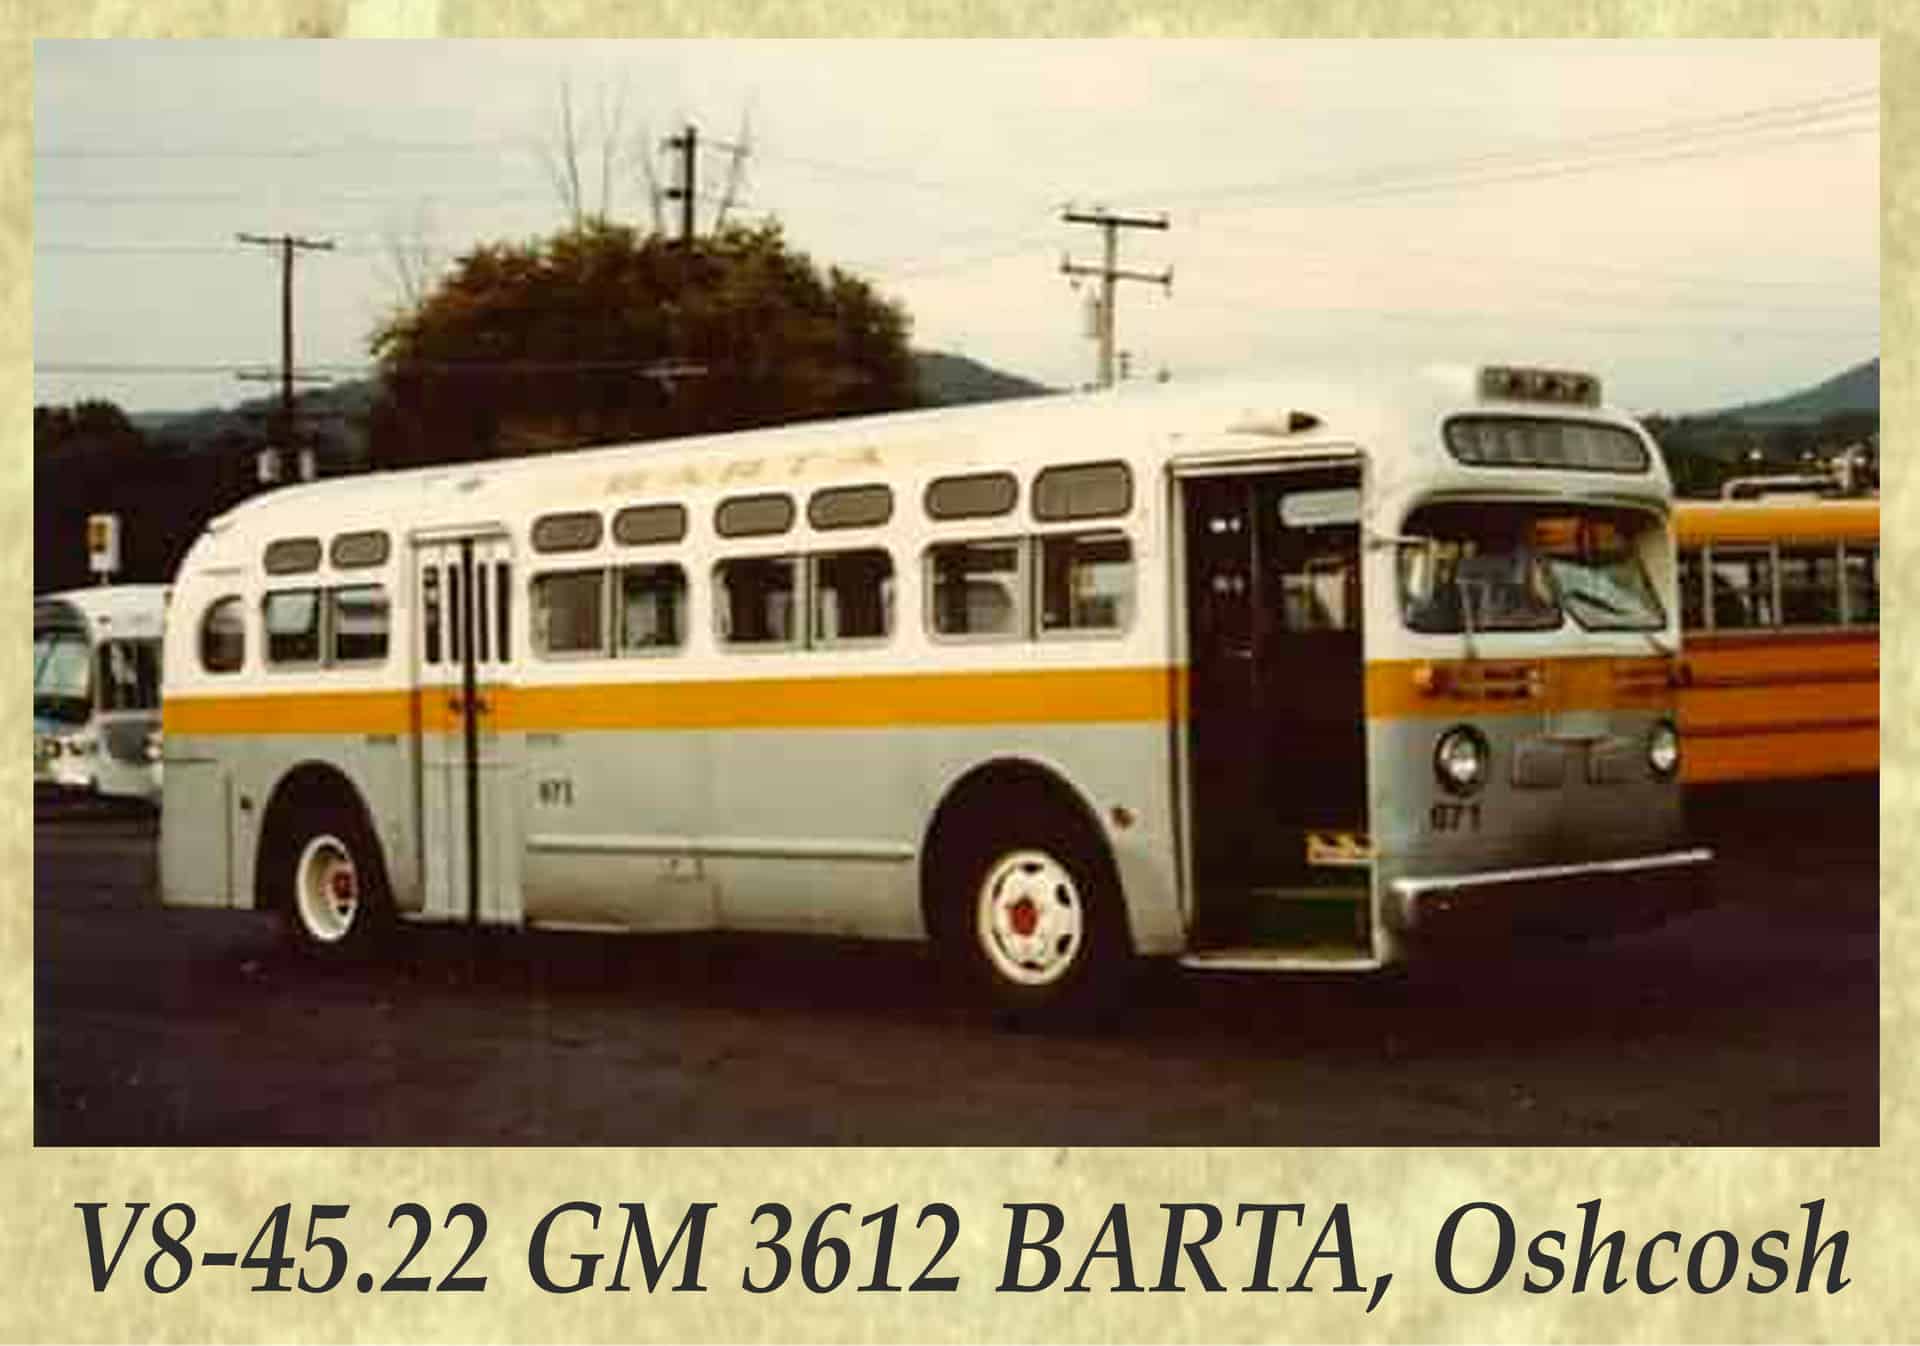 V8-45.22 GM 3612 BARTA, Oshcosh